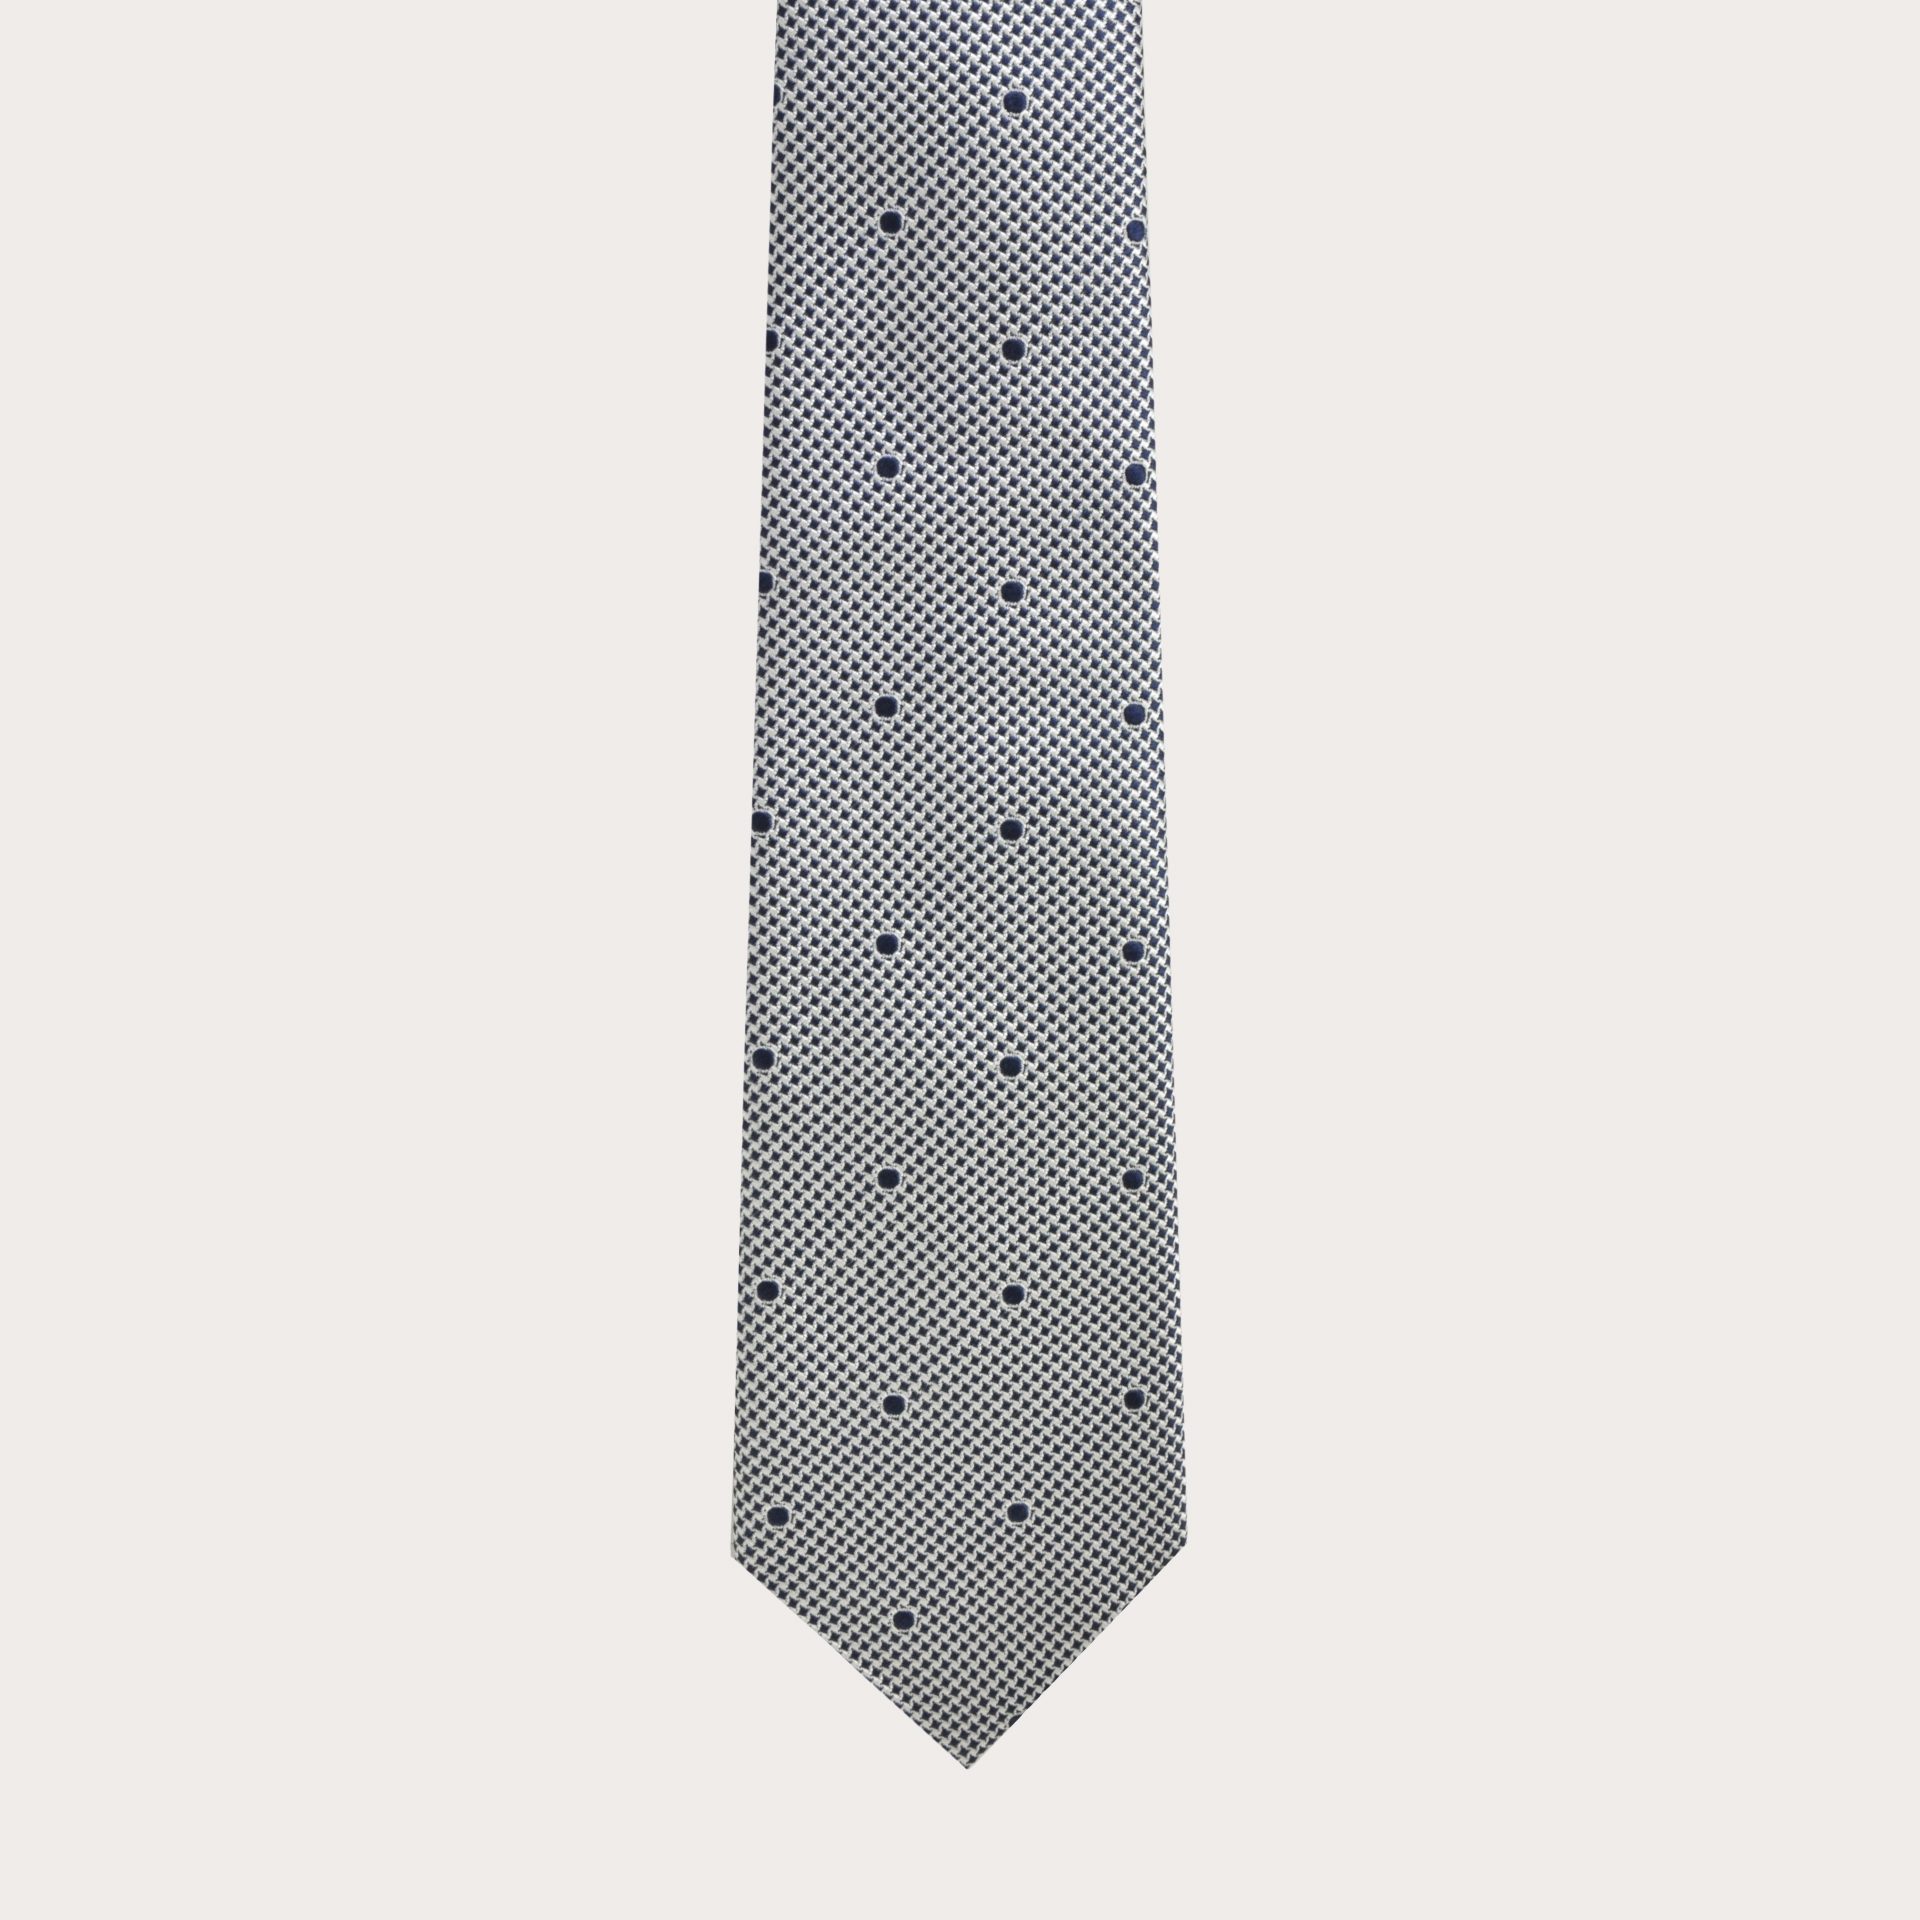 Cravatta in seta jacquard, fantasia bianca e blu